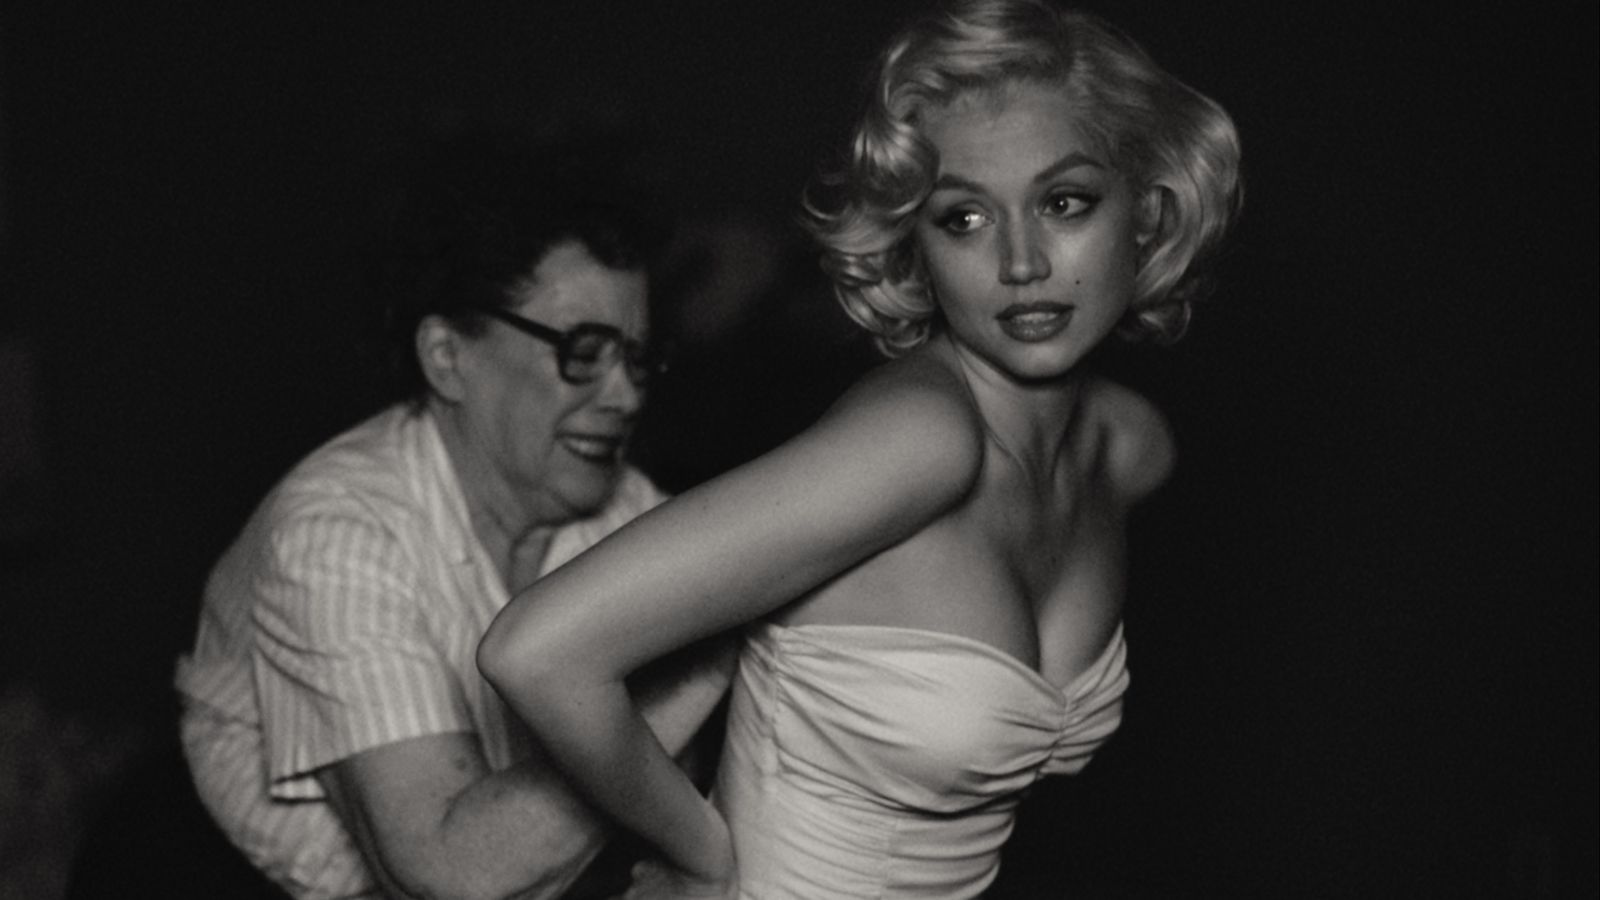 Ana de Armas channels Marilyn Monroe at 'Blonde' premiere in Venice